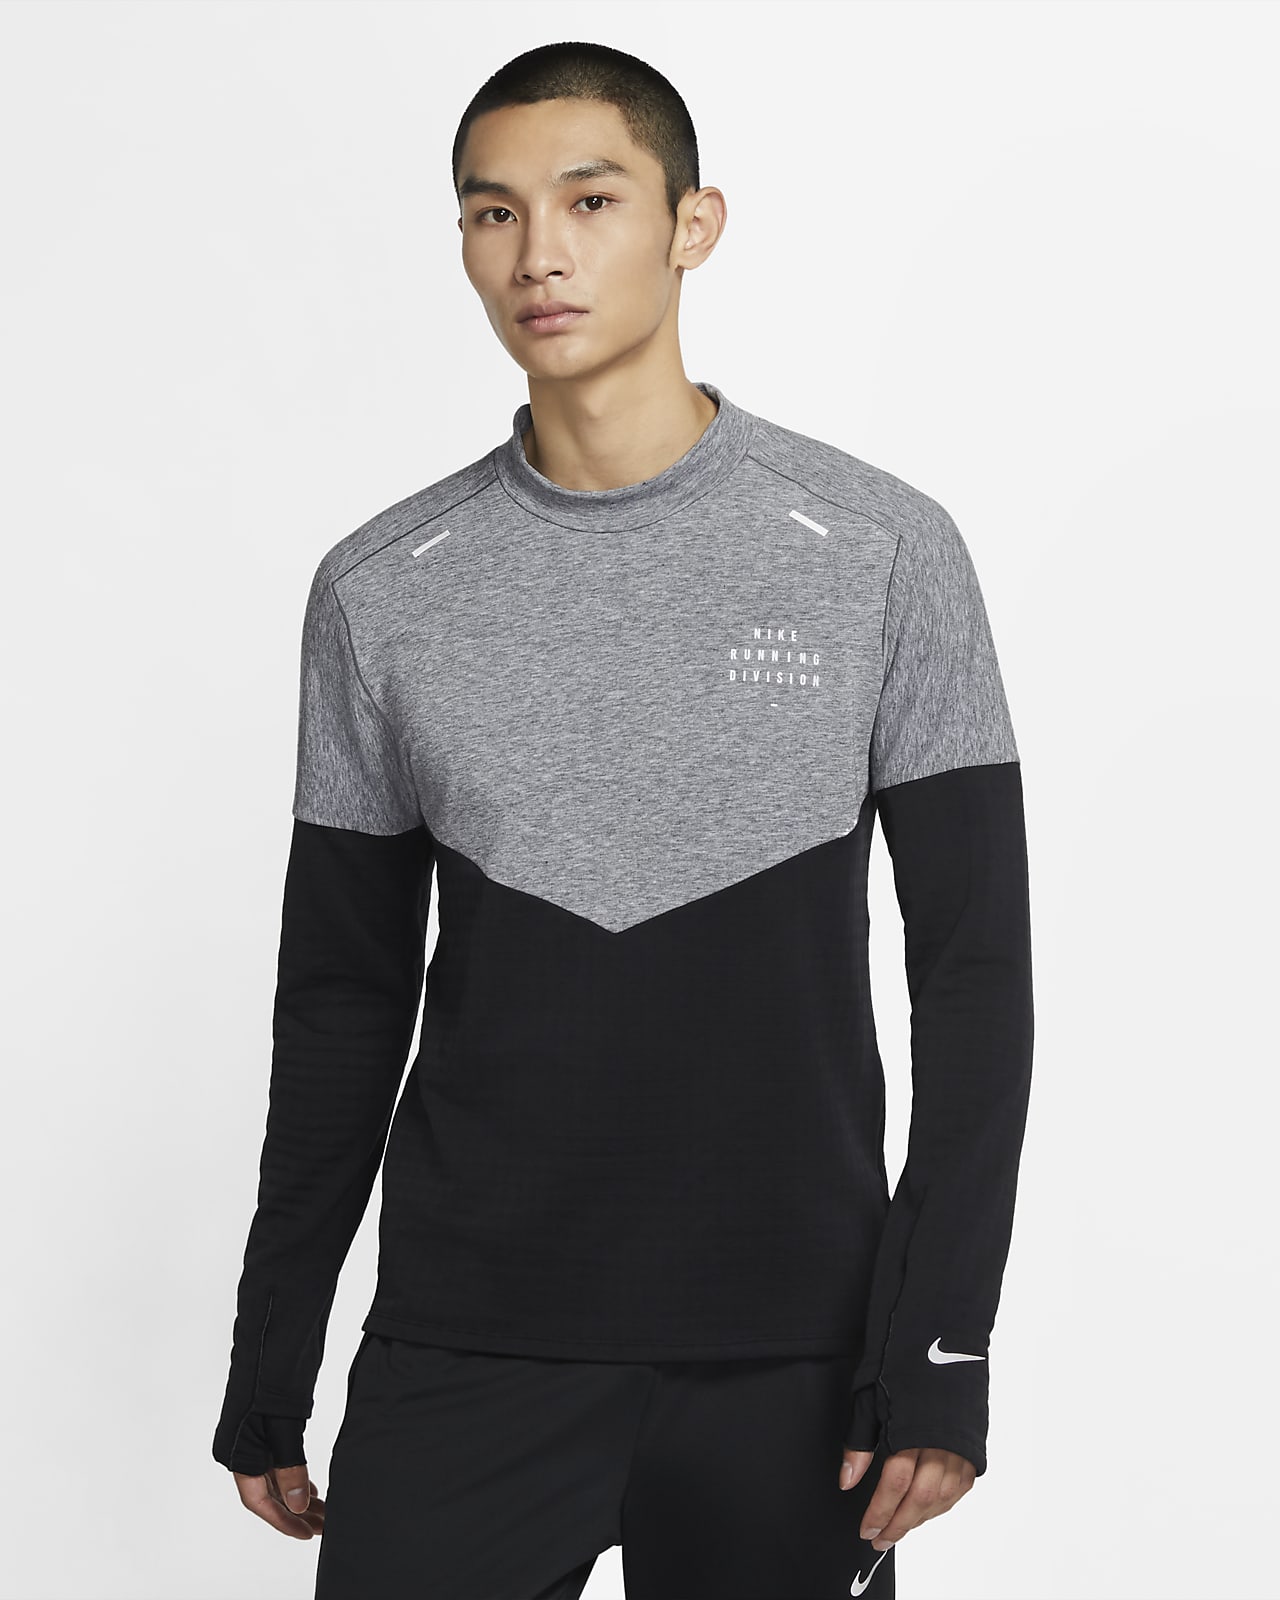 Nike Sphere Run Division Men's Wool 